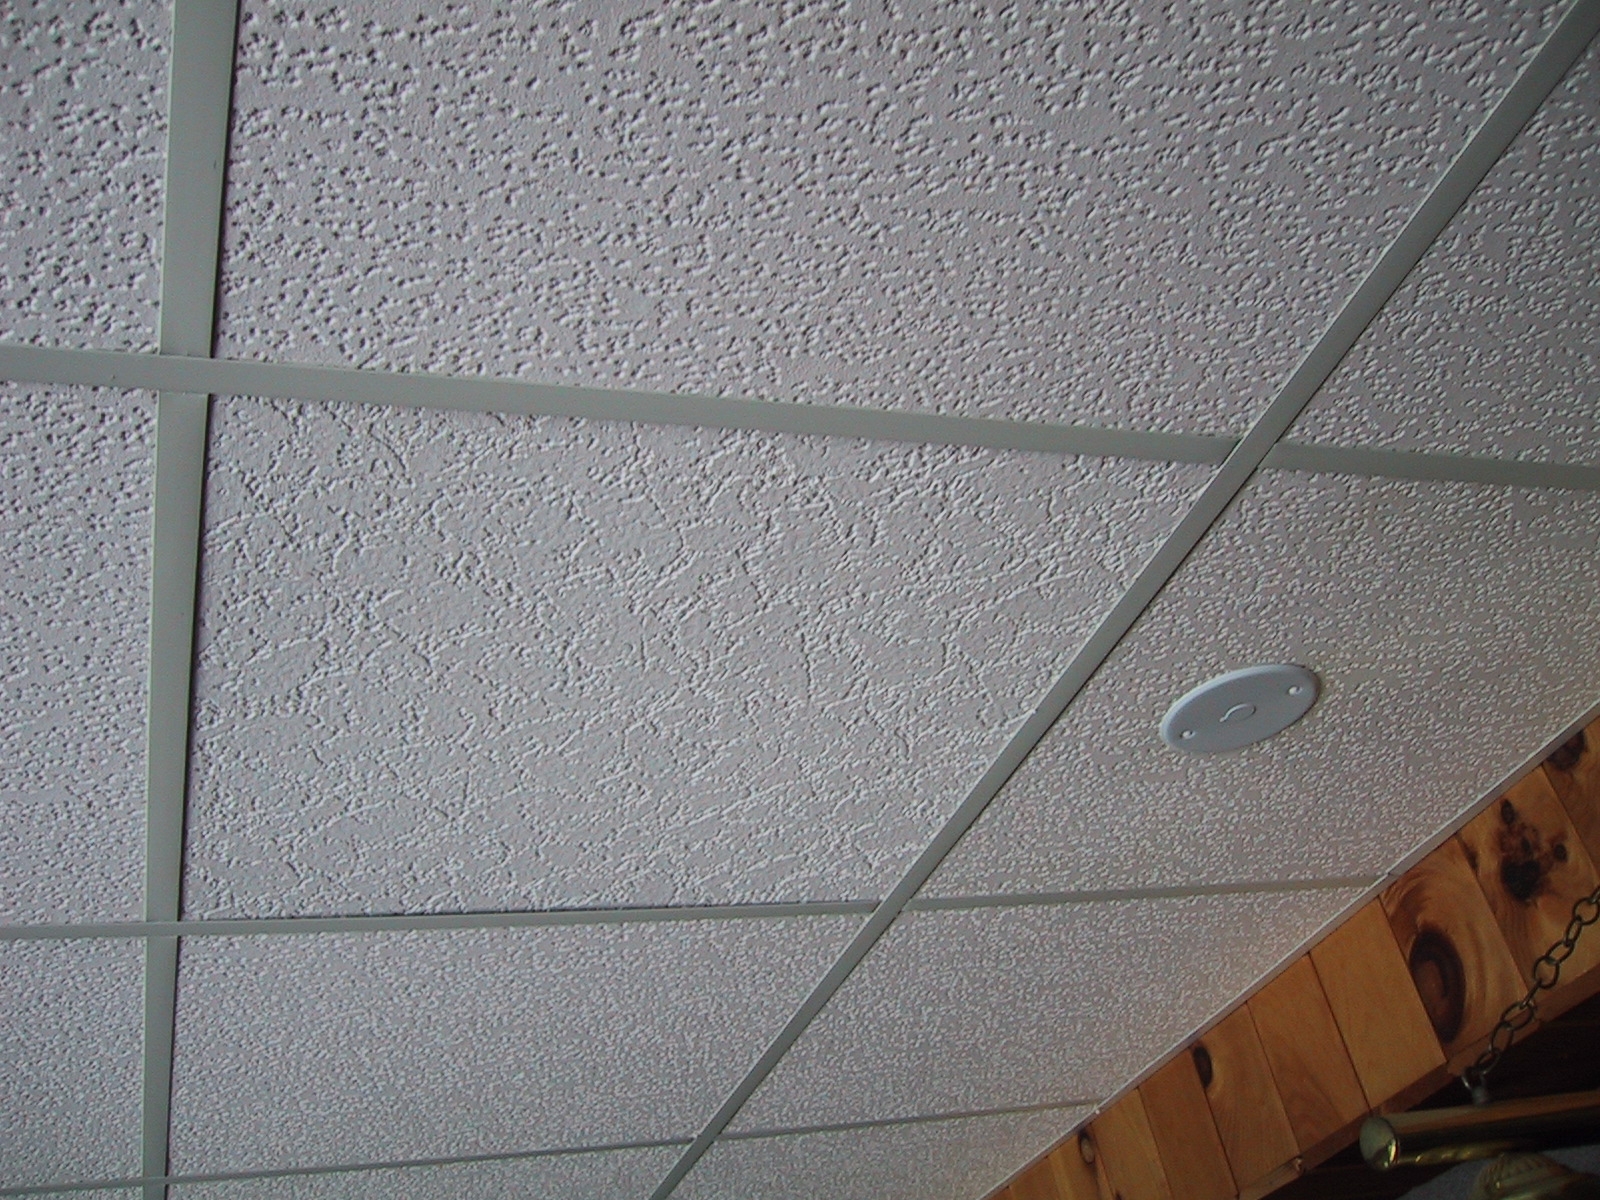 Ceiling Tiles For Drop Ceilingbest drop ceiling tile photos new basement and tile ideas